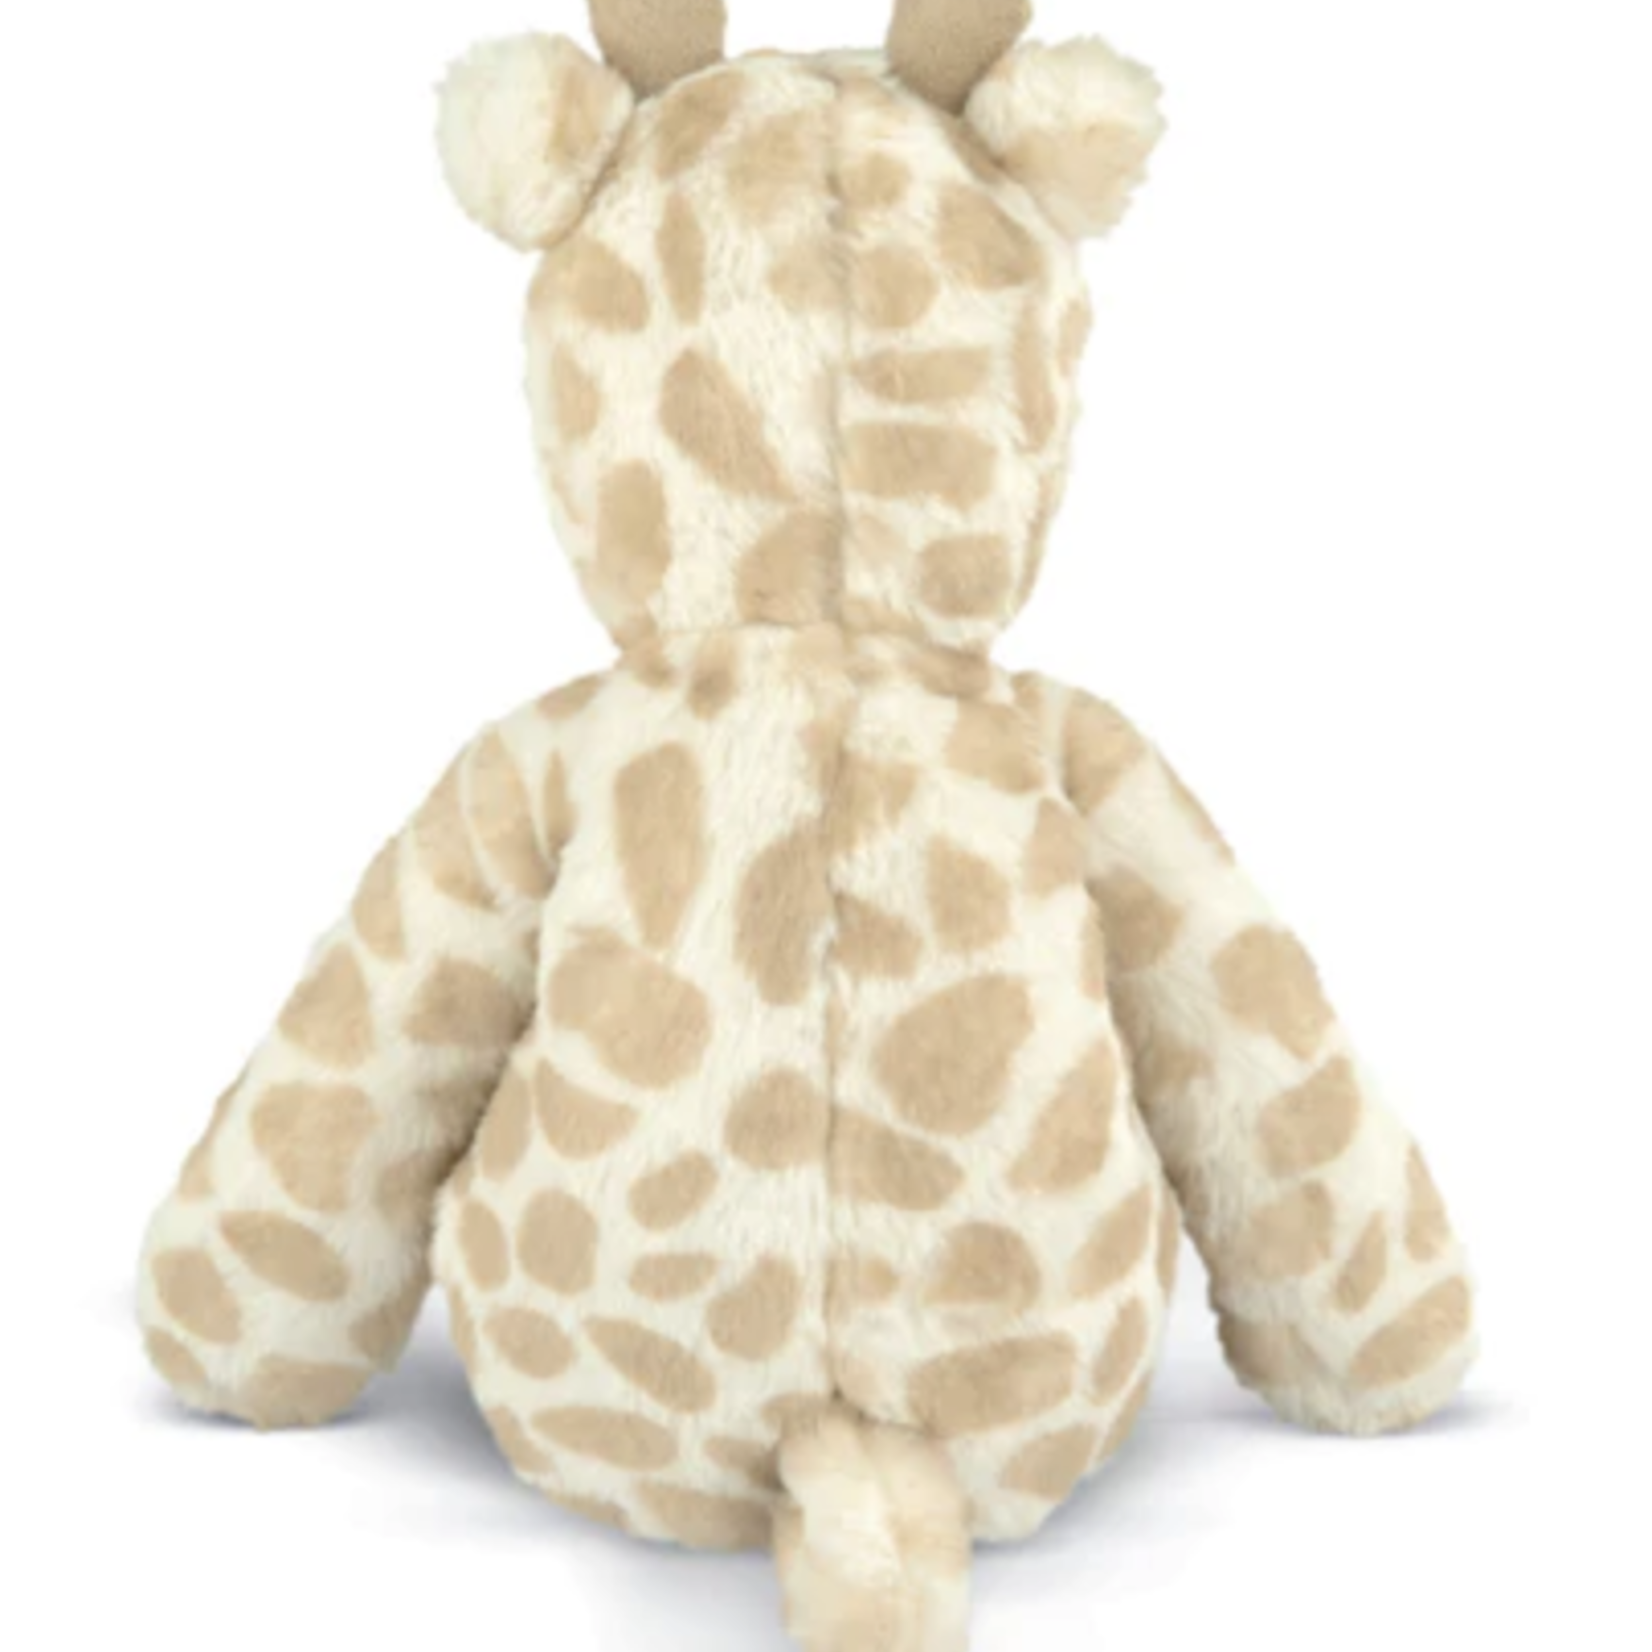 Mamas & Papas Giraffe Small Beanie Toy